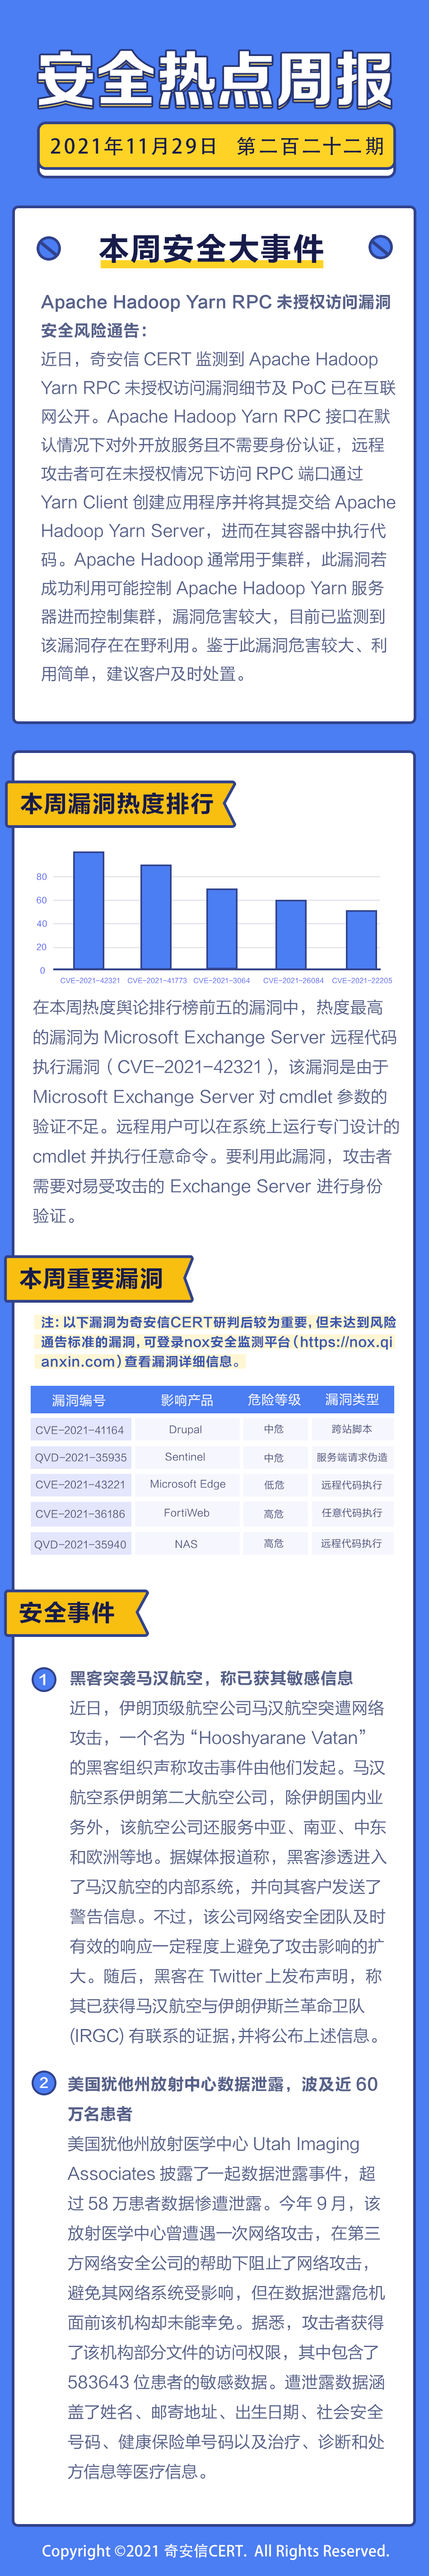 【安全热点周报】第222期:Microsoft Exchange Server 远程代码执行漏洞利用细节及PoC被公开